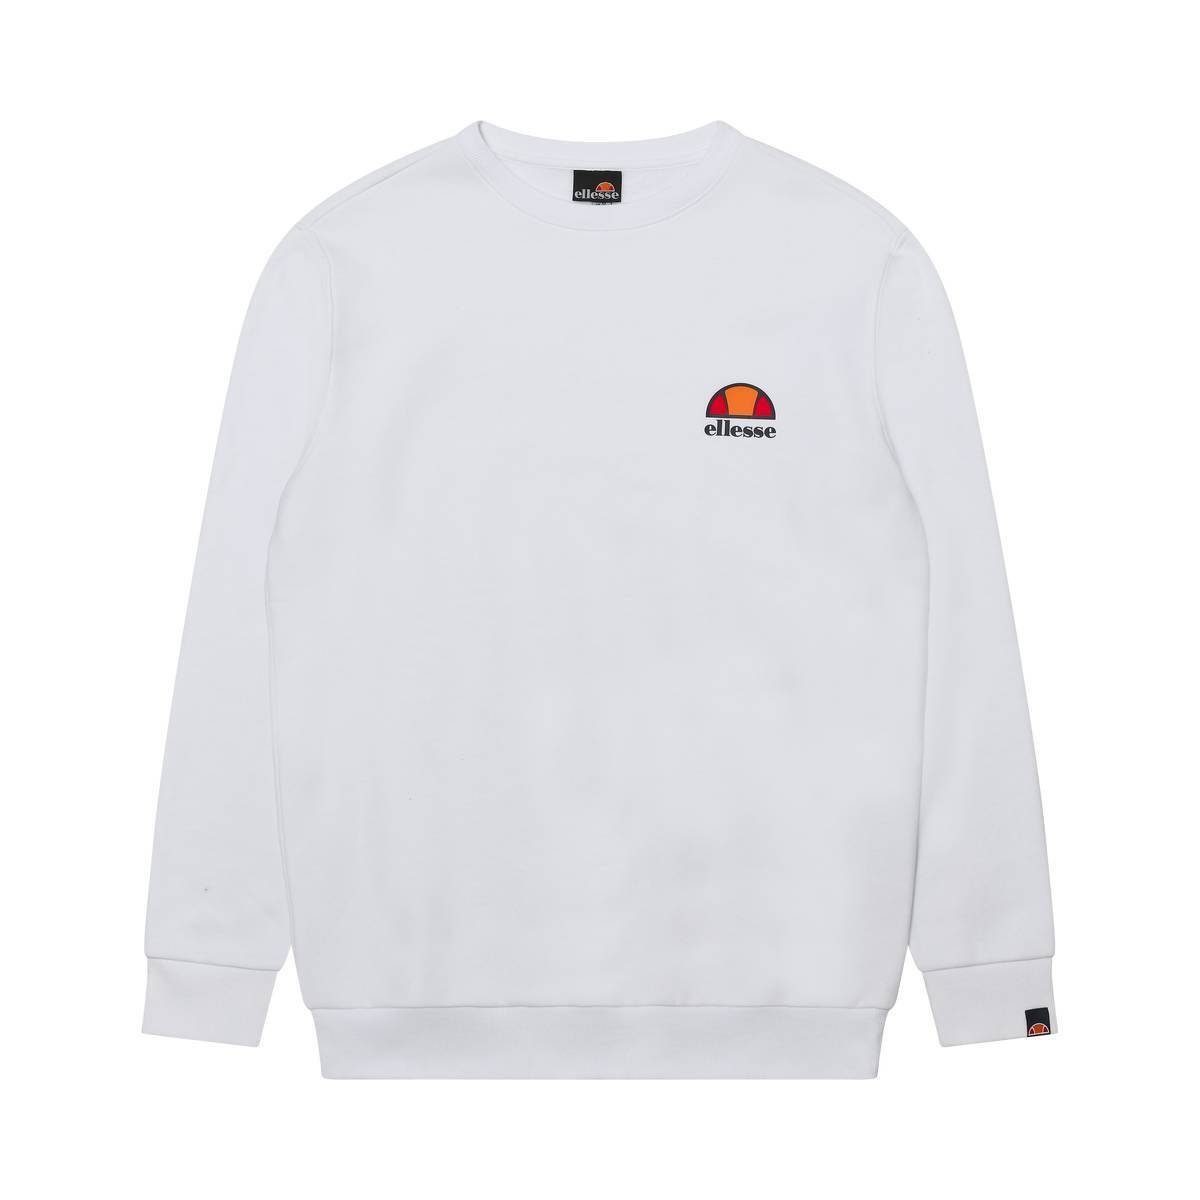 Weiß Rundhals DIVERIA - Sweatshirt Sweater, Ellesse Sweatshirt Herren